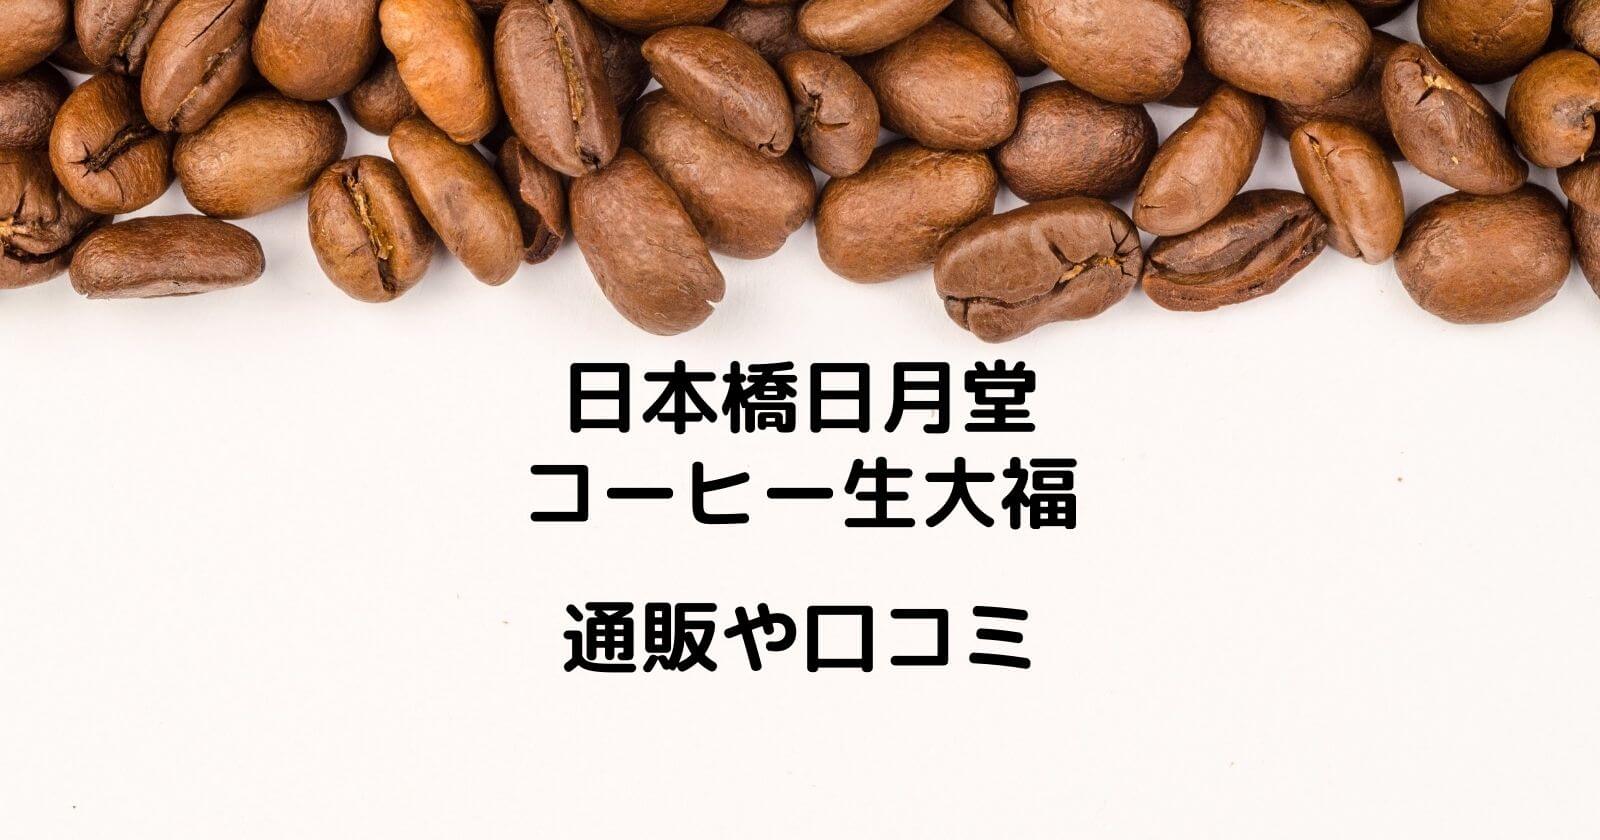 日本橋日月堂「コーヒー生大福」の通販や口コミ